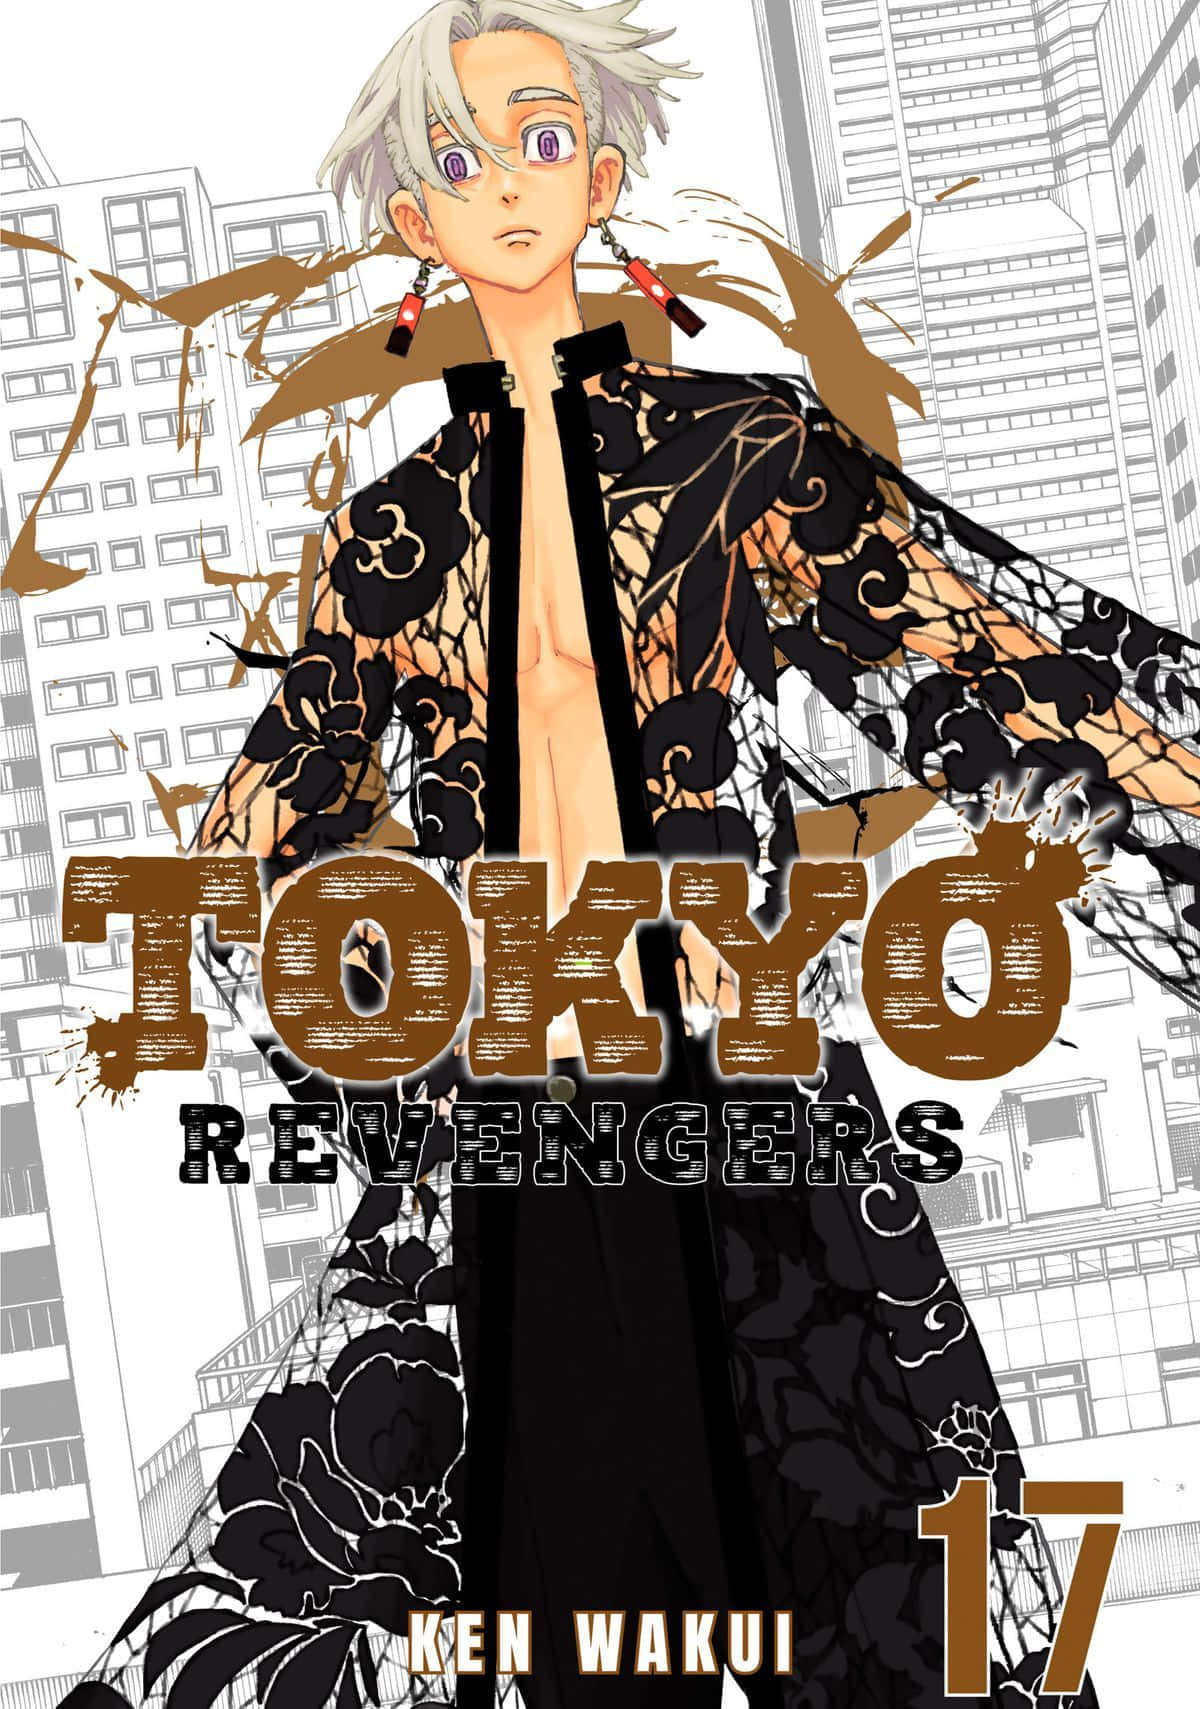 Takemichihanagaki Förbereder Sig För Krig I Tokyo Revengers.